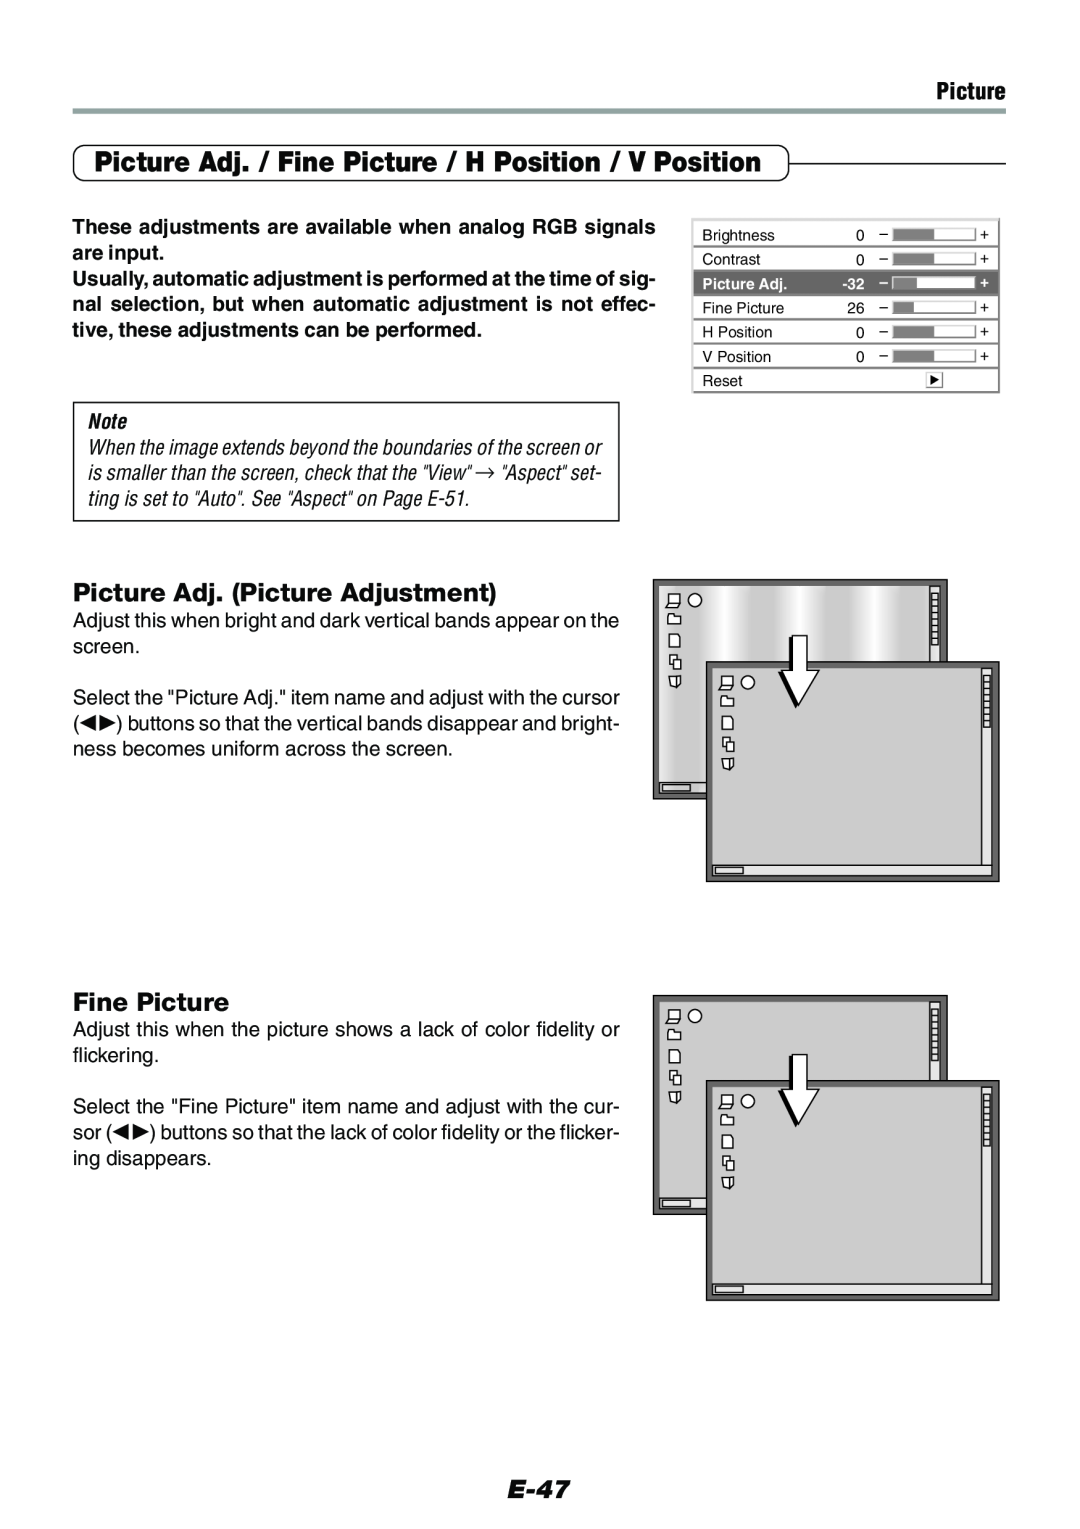 Epson V-1100 user manual Picture Adj. Picture Adjustment, Fine Picture, E-47 